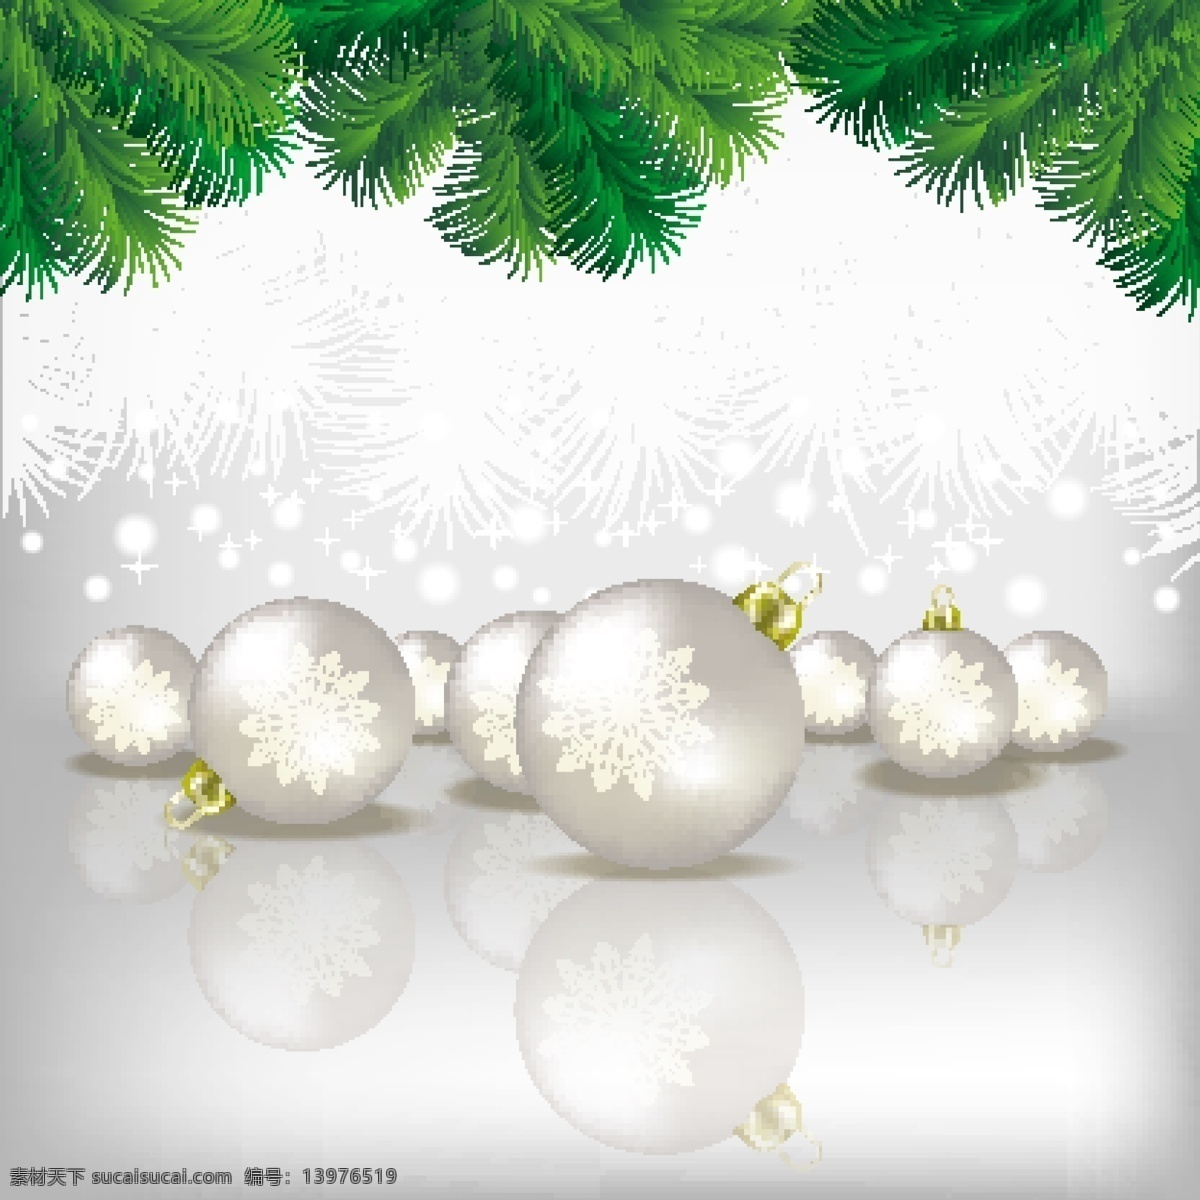 矢量 圣诞 雪花 吊球 松枝 背景 彩球 圣诞节 挂饰 节日素材